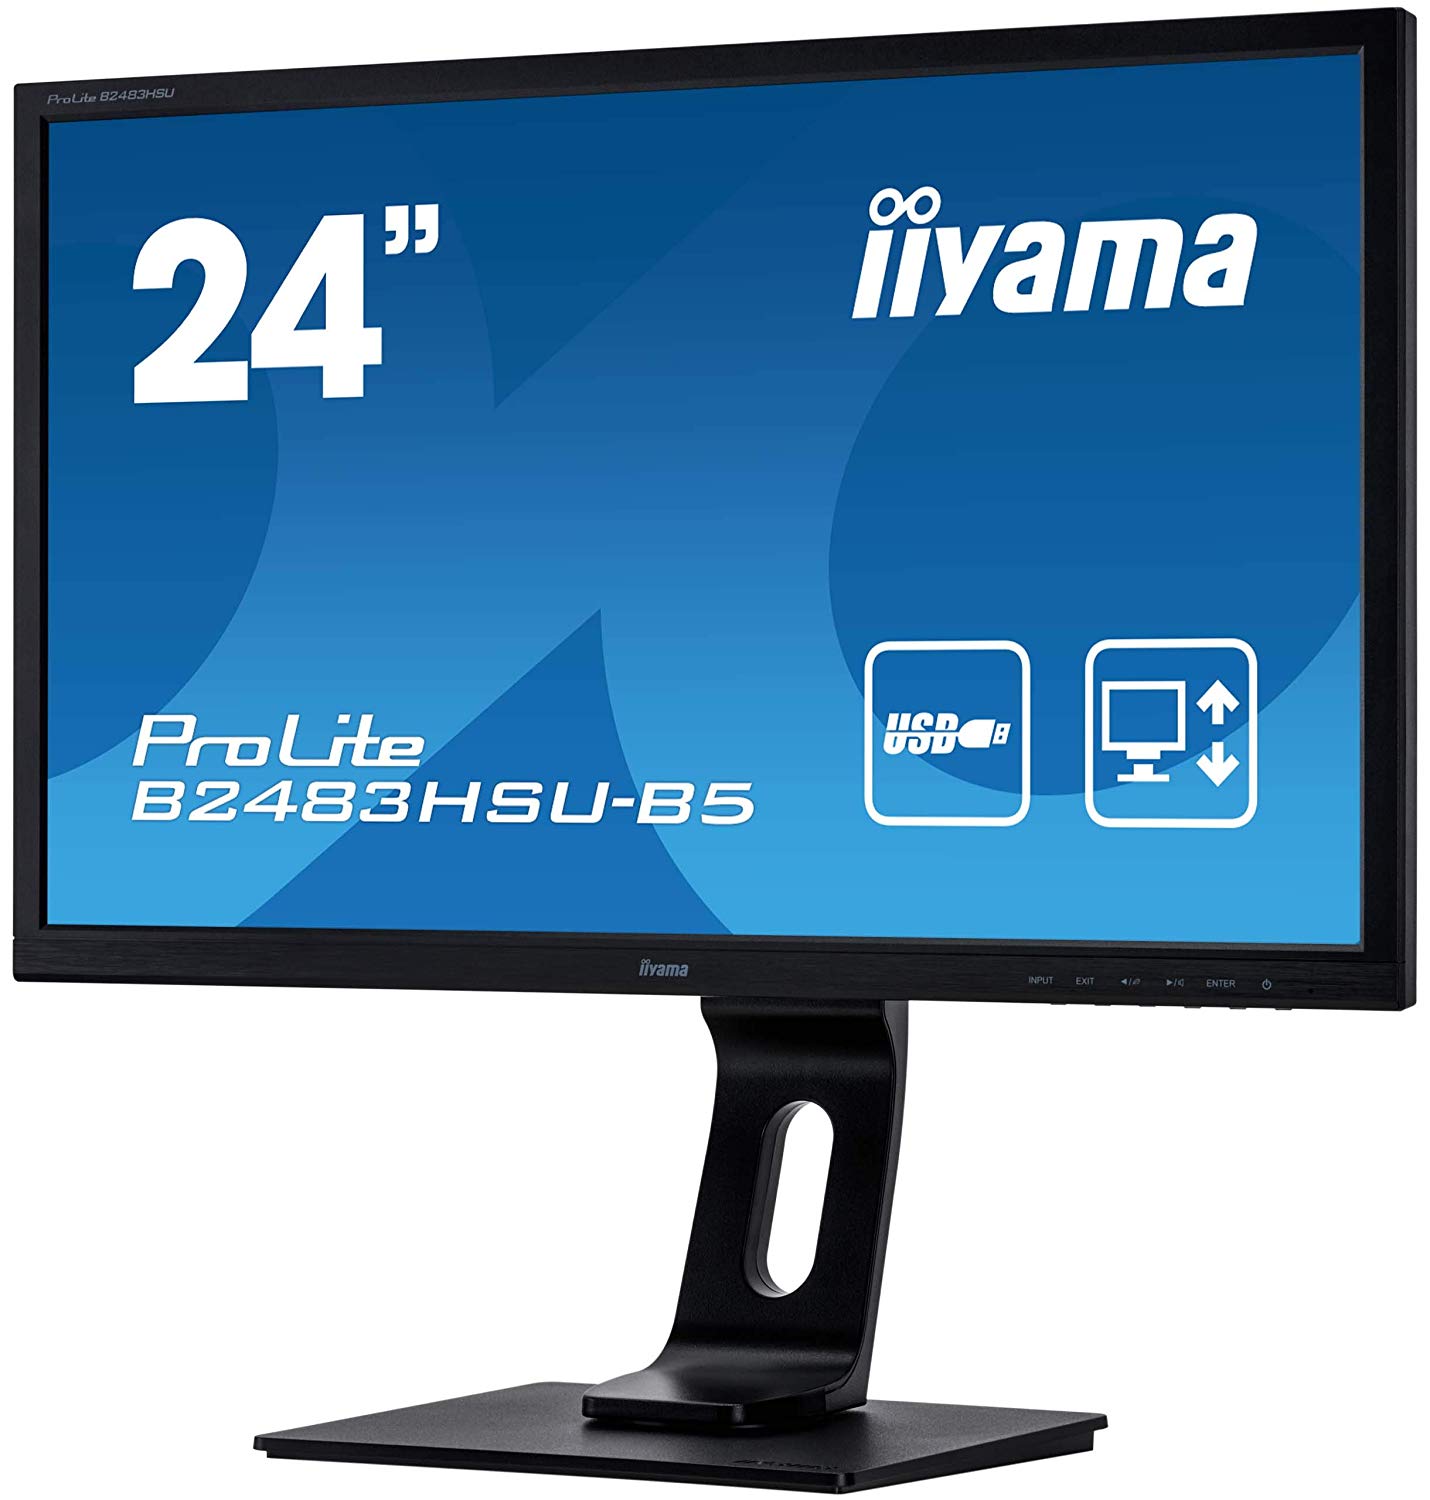 iiyama ProLite B2483HSU B5 LED Monitor 61cm (24) (24 sichtbar) 1920 x 1080 Full HD (1080p) TN 250 cd m² 1000 1 1 ms HDMI, VGA, DisplayPort Lautsprecher mattschwarz (B2483HSU B5)  - Onlineshop JACOB Elektronik